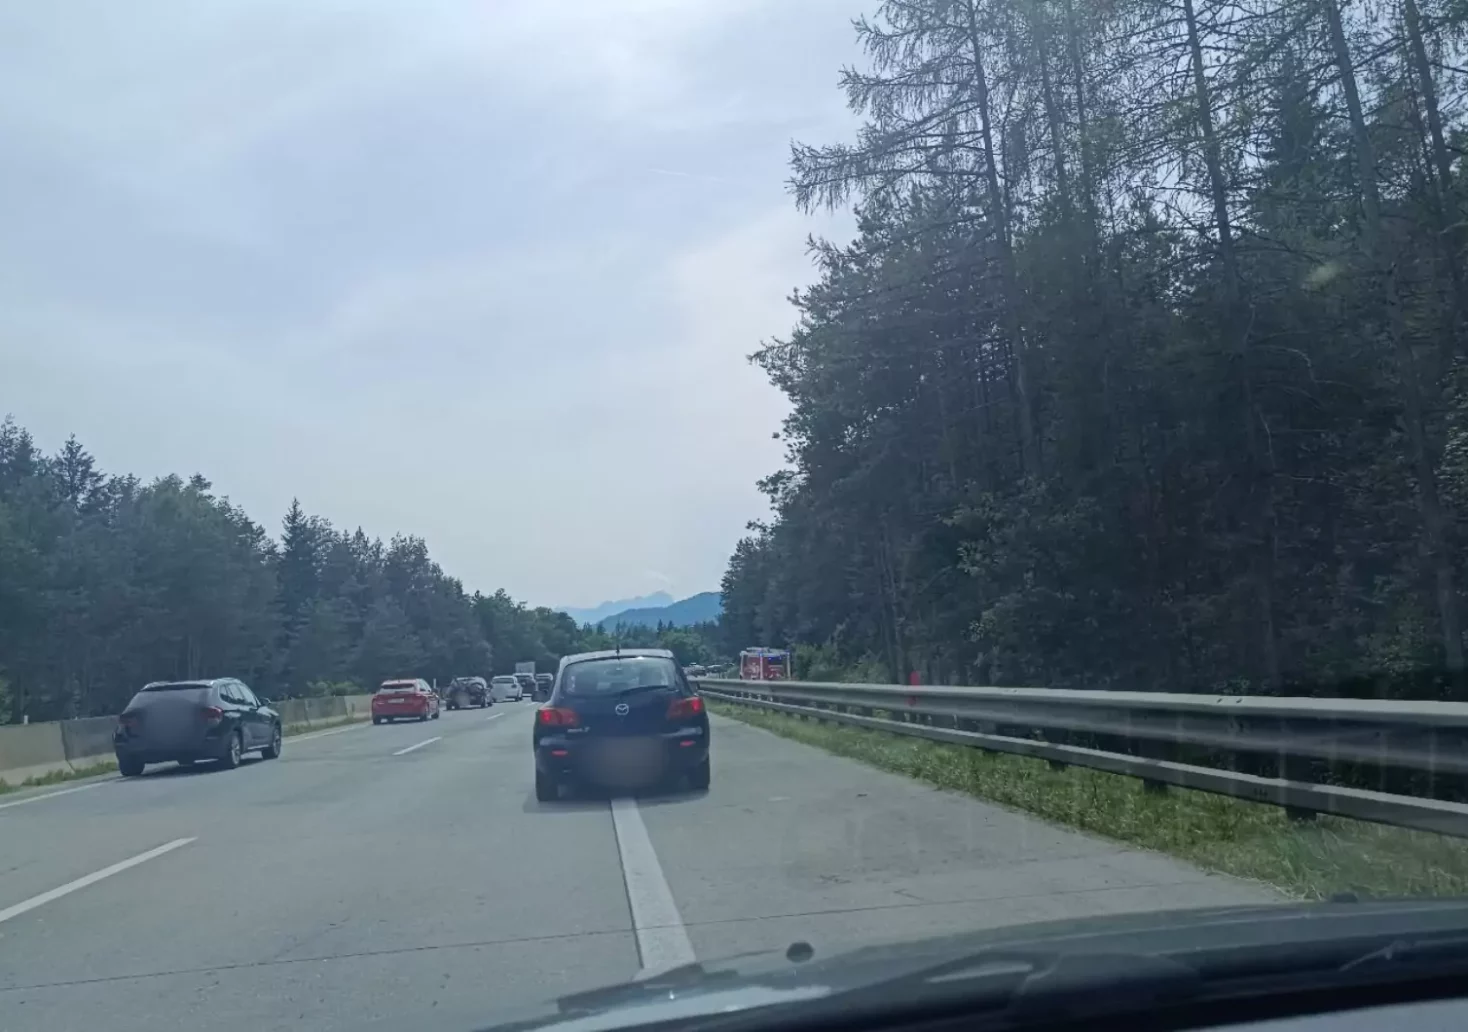 Bild auf 5min.at zeigt einen Stau auf der Autobahn in Pörtschach.